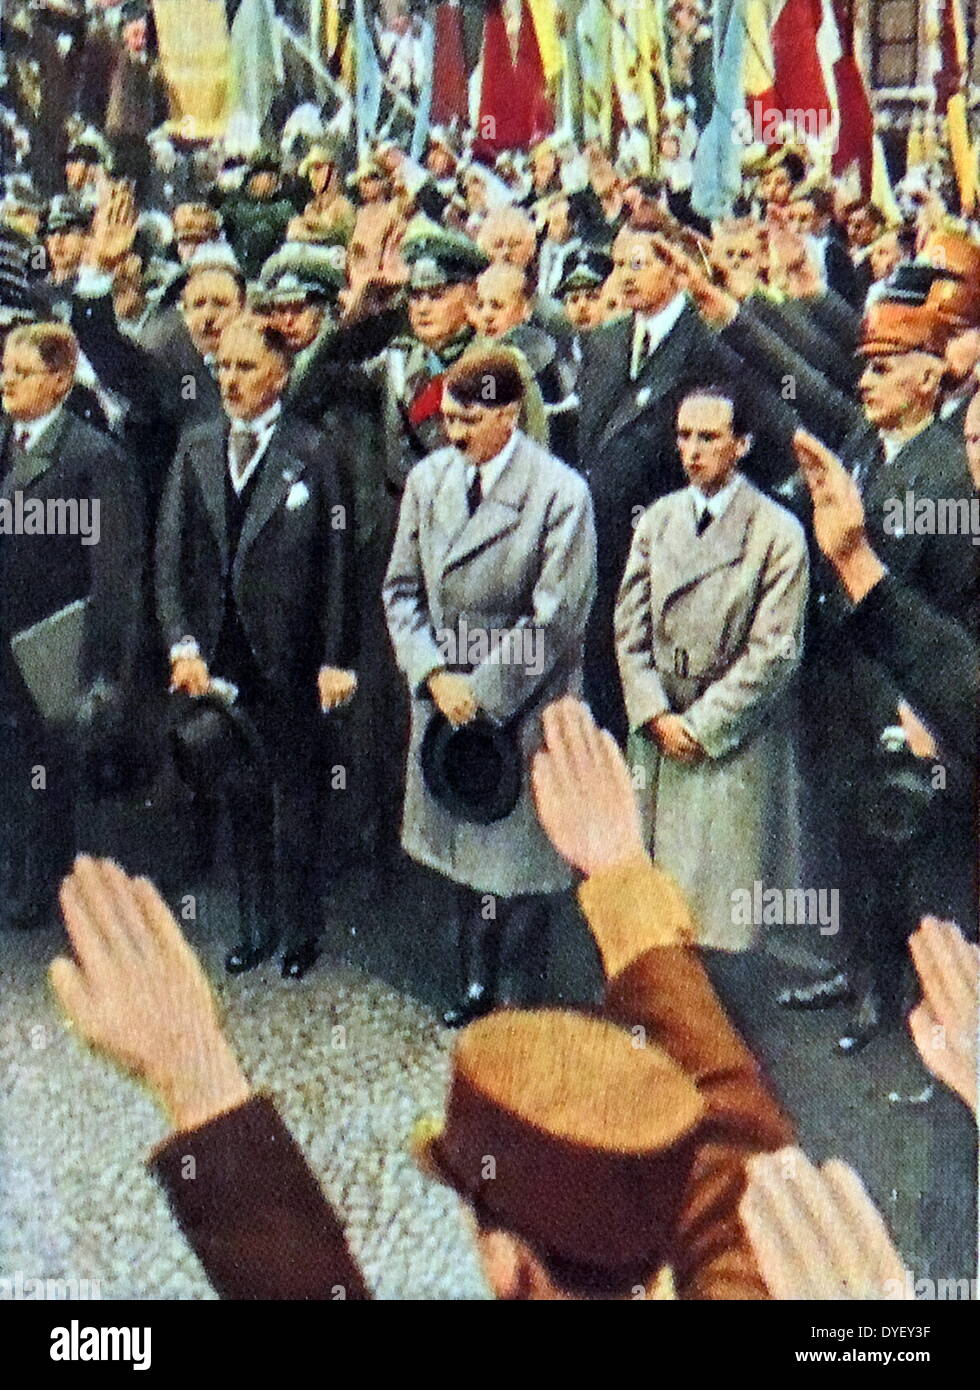 Vizekanzler Von Papen, Adolf Hitler und Josef Goebbels ca. 1933 Stockfoto